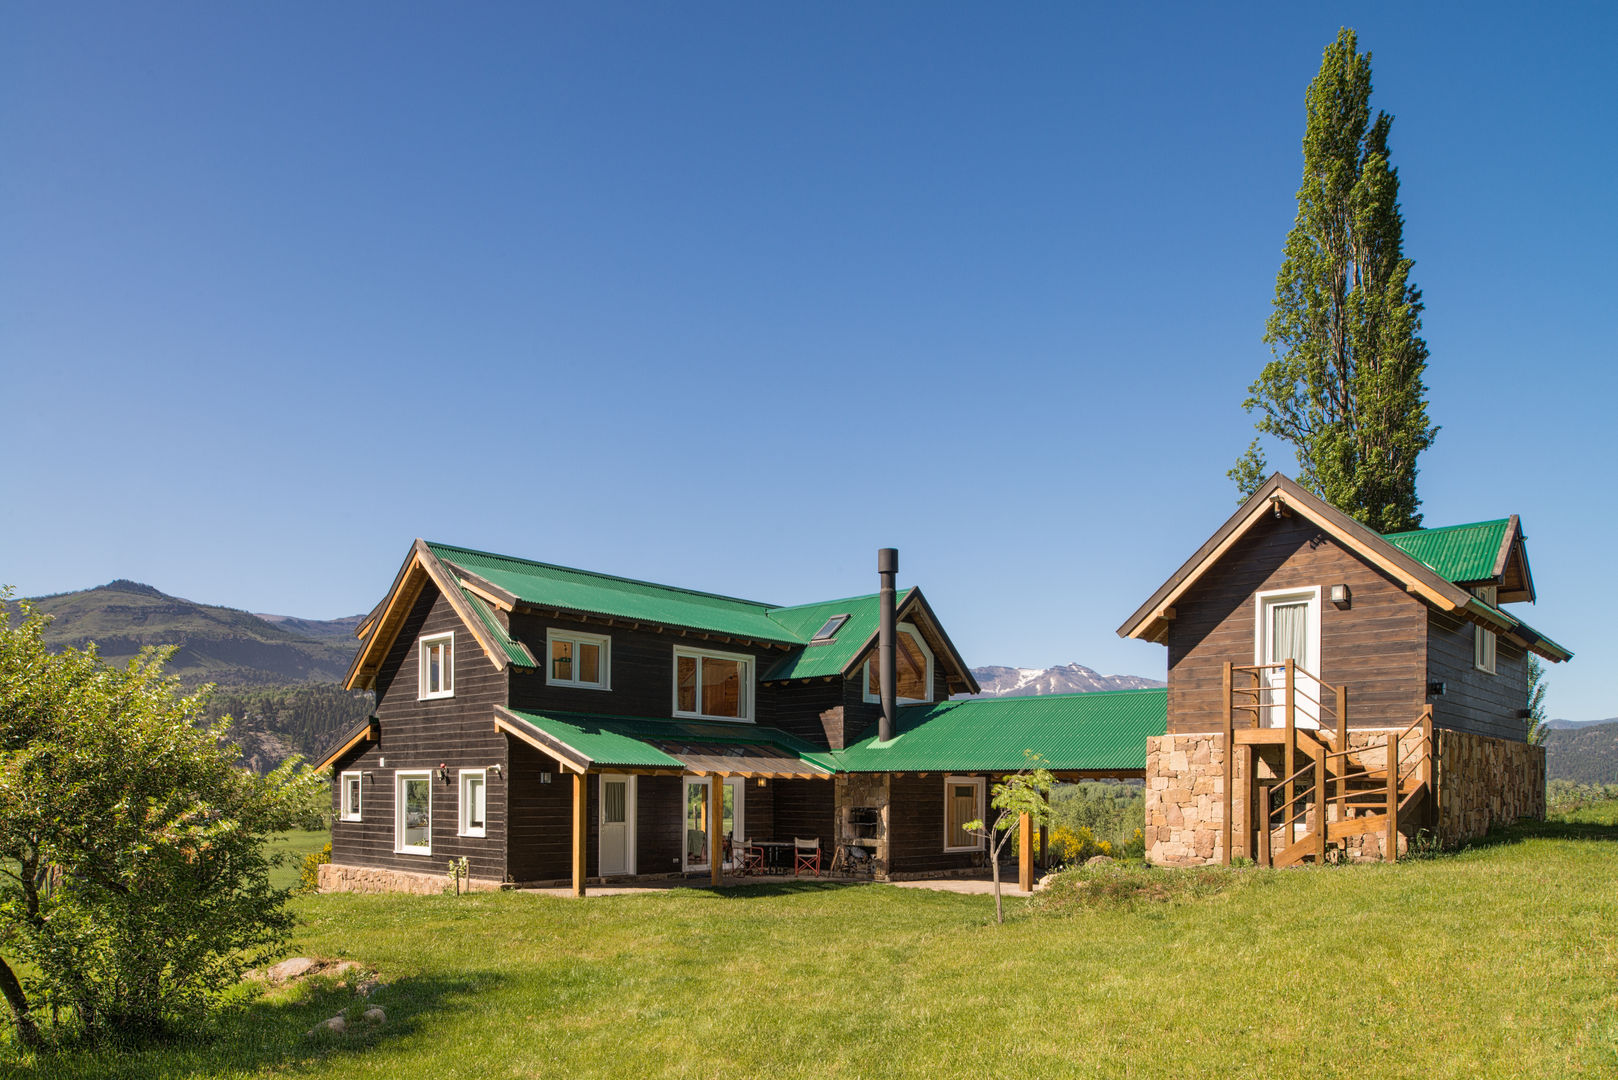 Casa de madera en San Martin de los Andes, Patagonia Log Homes - Arquitectos - Neuquén Patagonia Log Homes - Arquitectos - Neuquén Chalets & maisons en bois Bois massif Multicolore